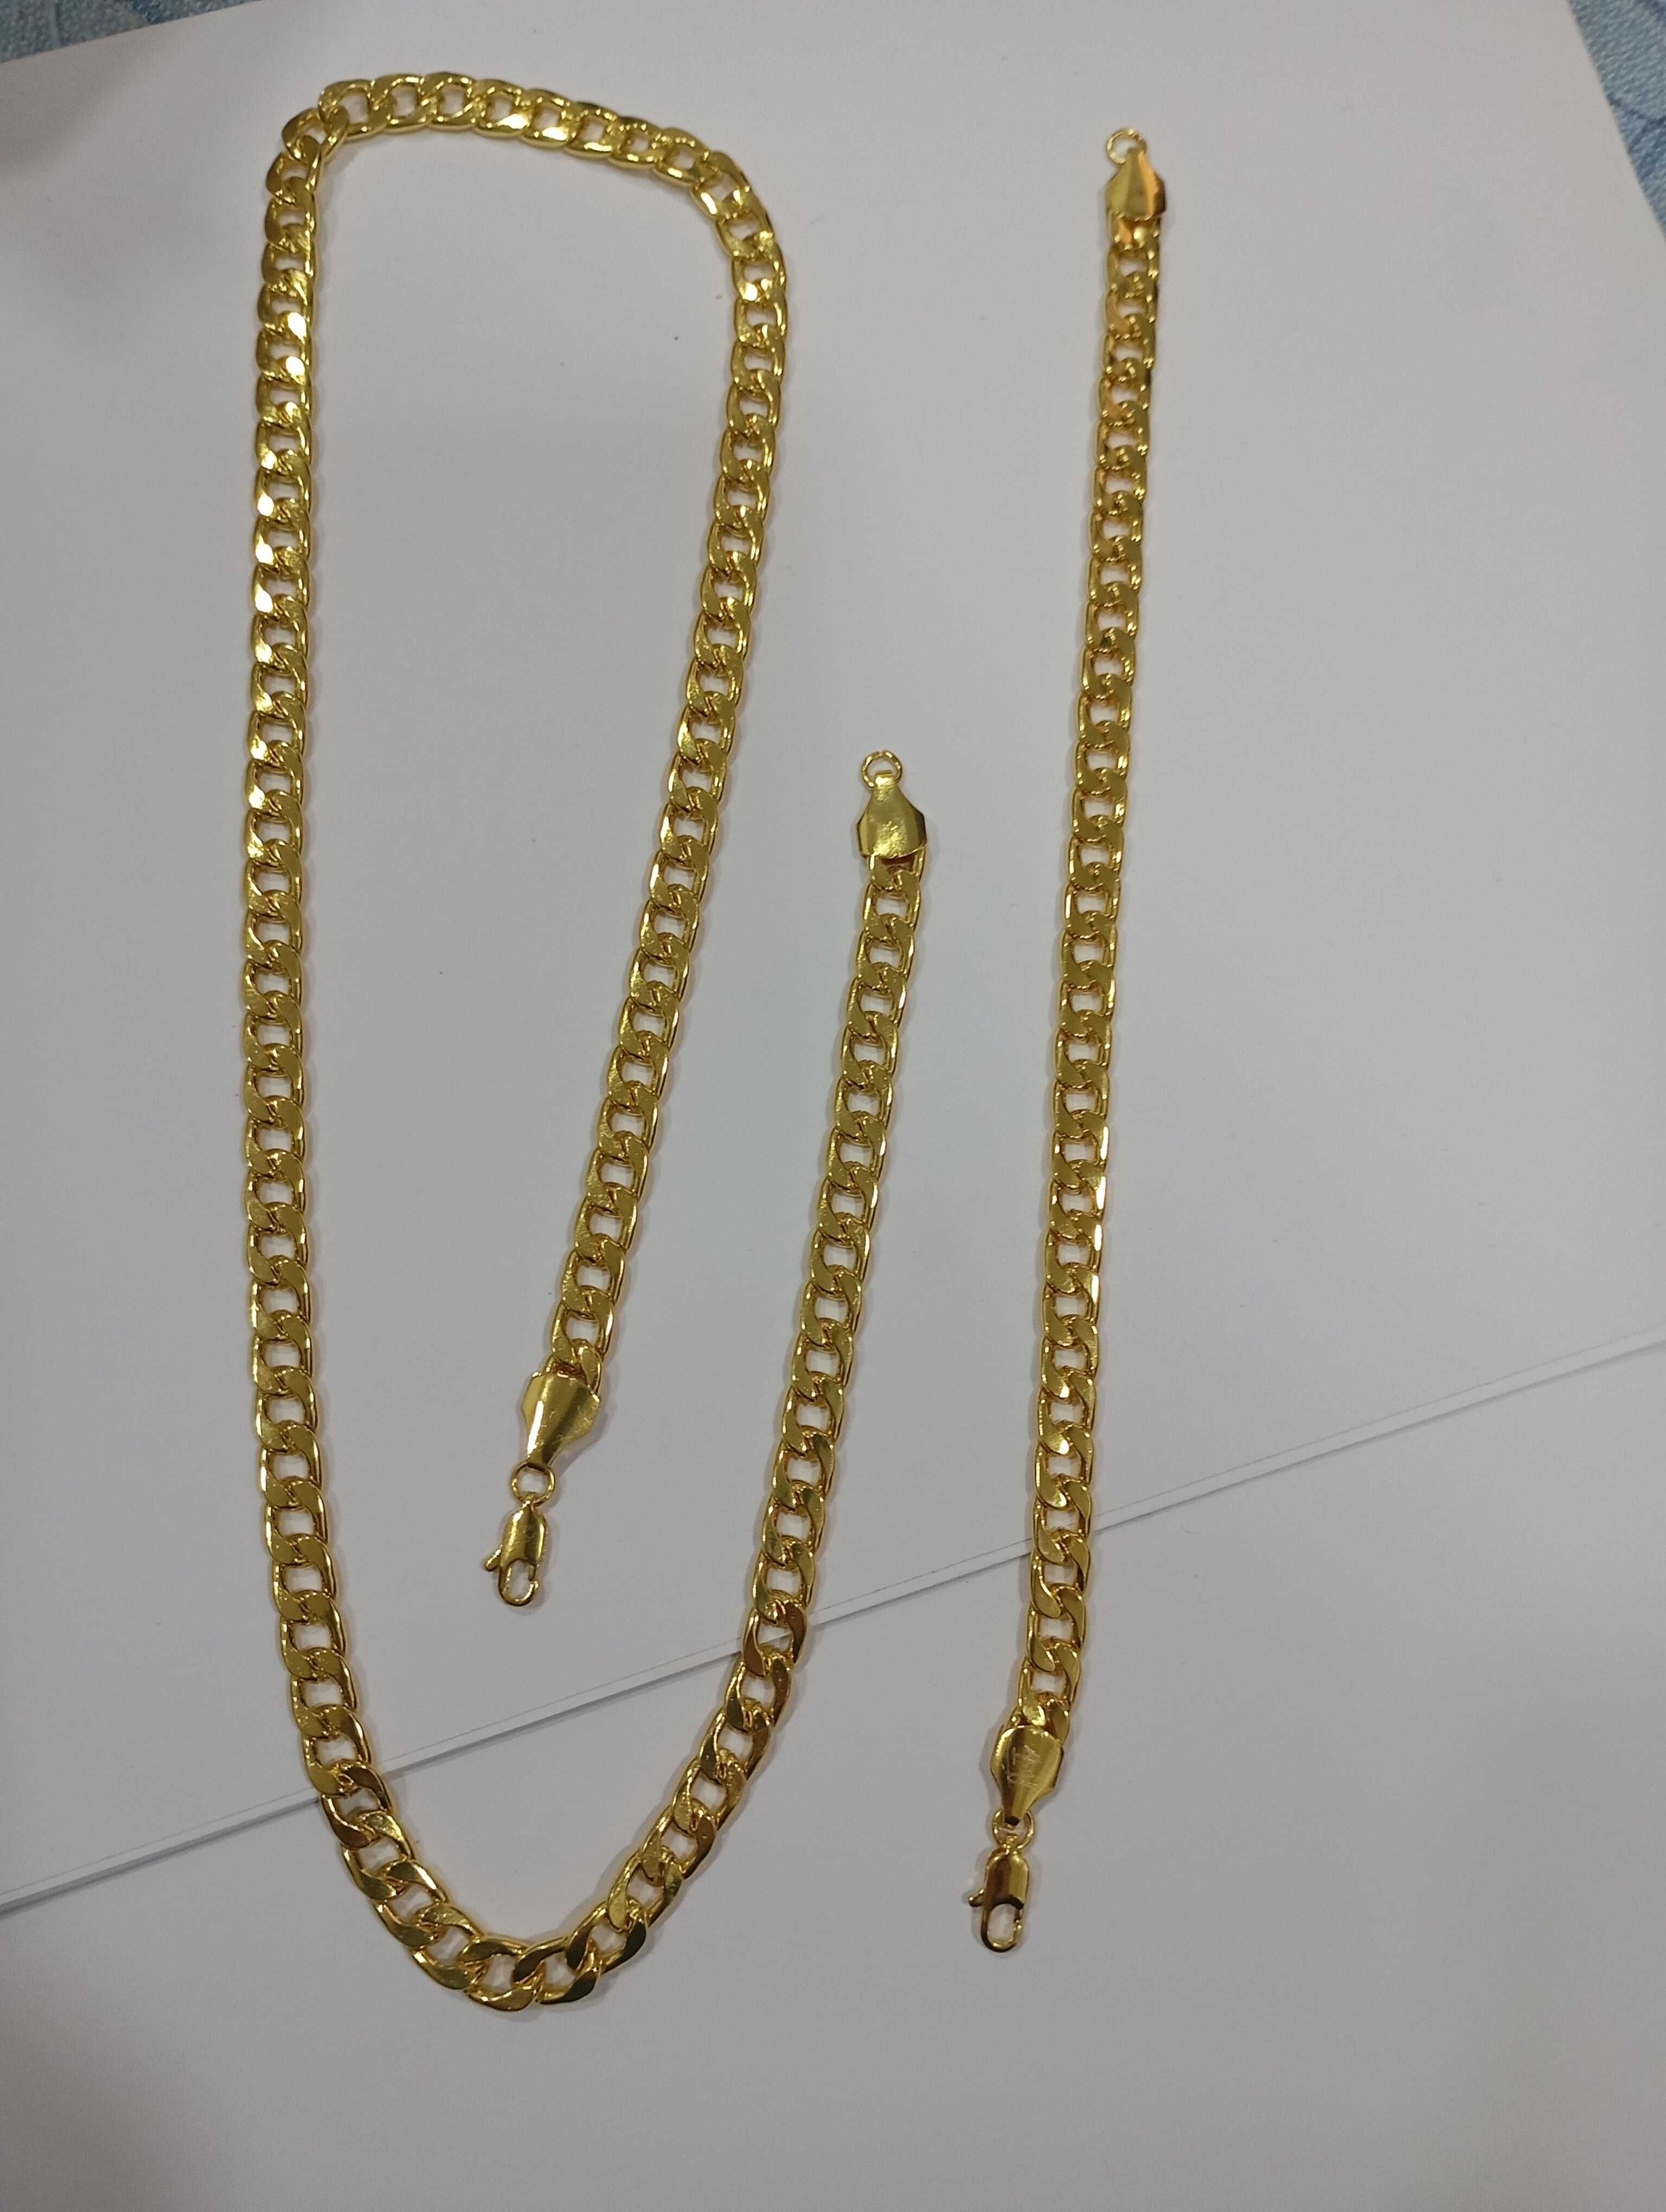 60€ negociável conjunto cordão e pulseira de aço banhado a ouro 24k k